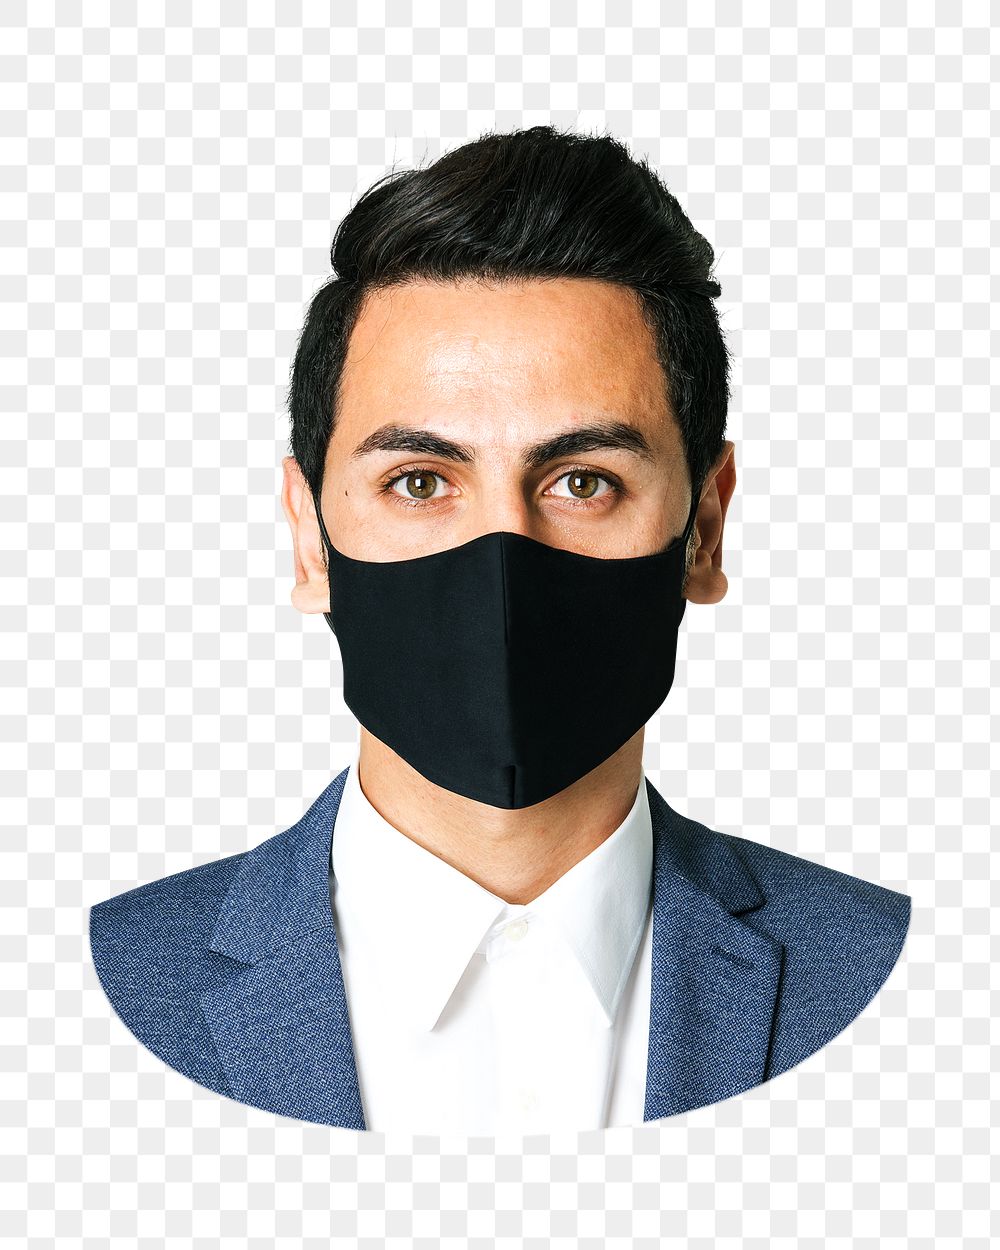 Png man black mask formal wear, transparent background